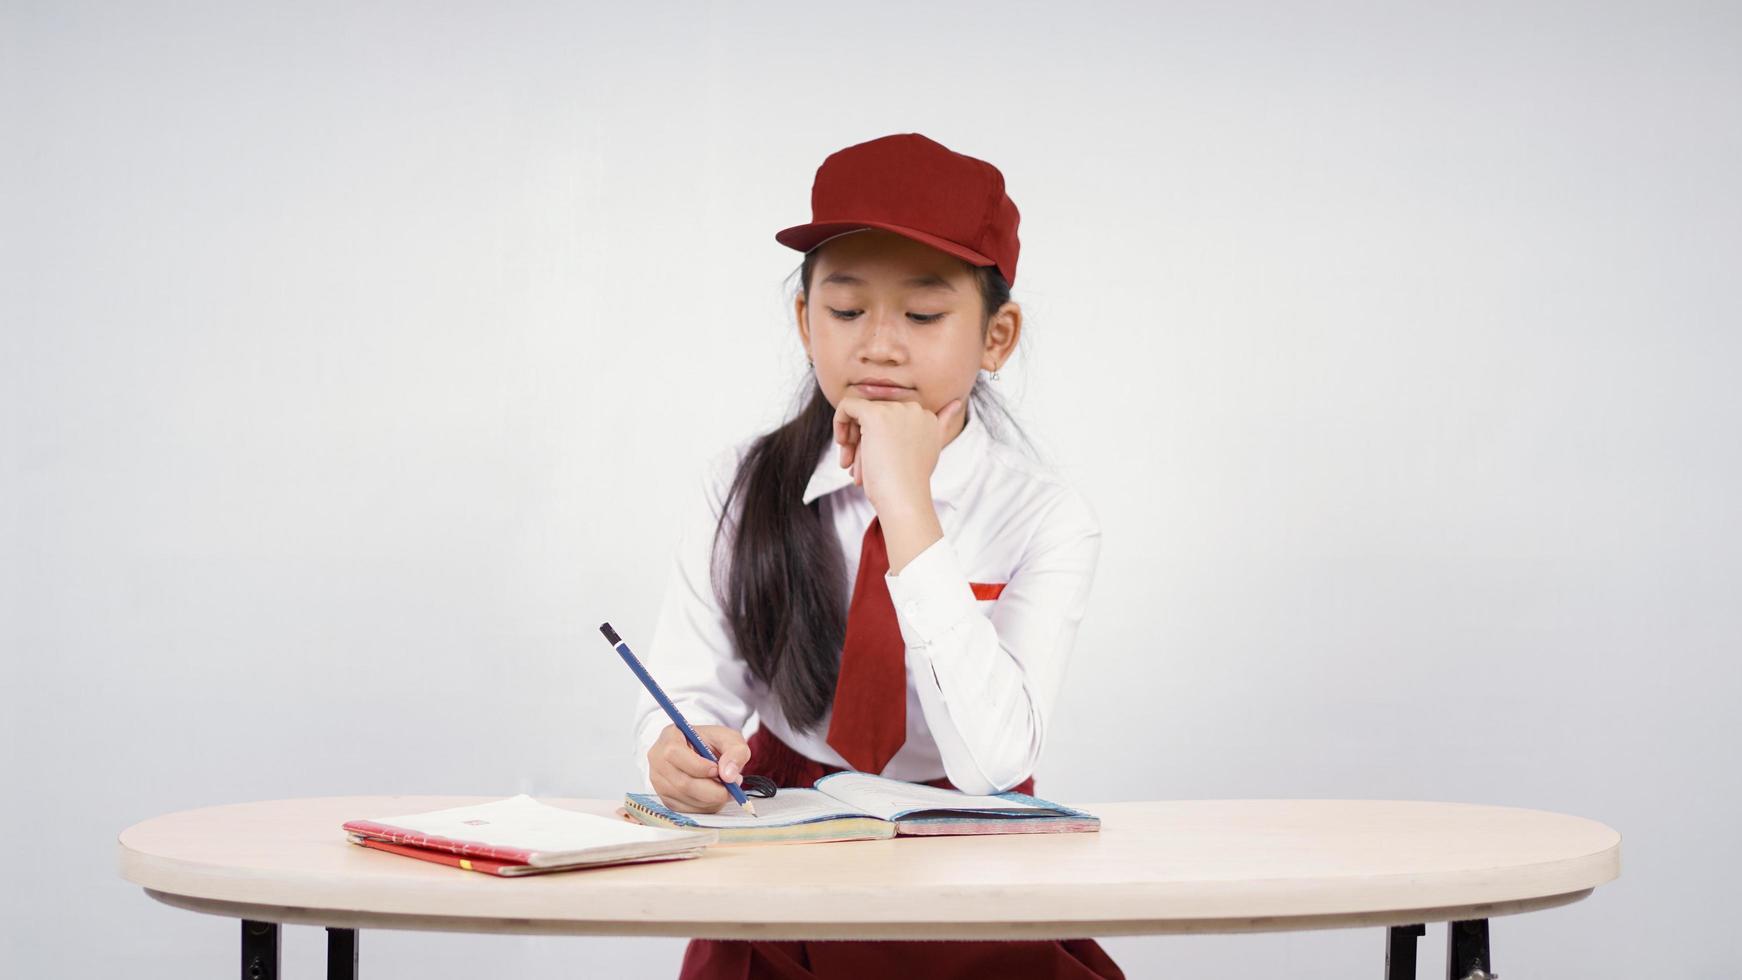 Grundschule asiatisches Mädchen schreiben genießen isoliert auf weißem Hintergrund foto